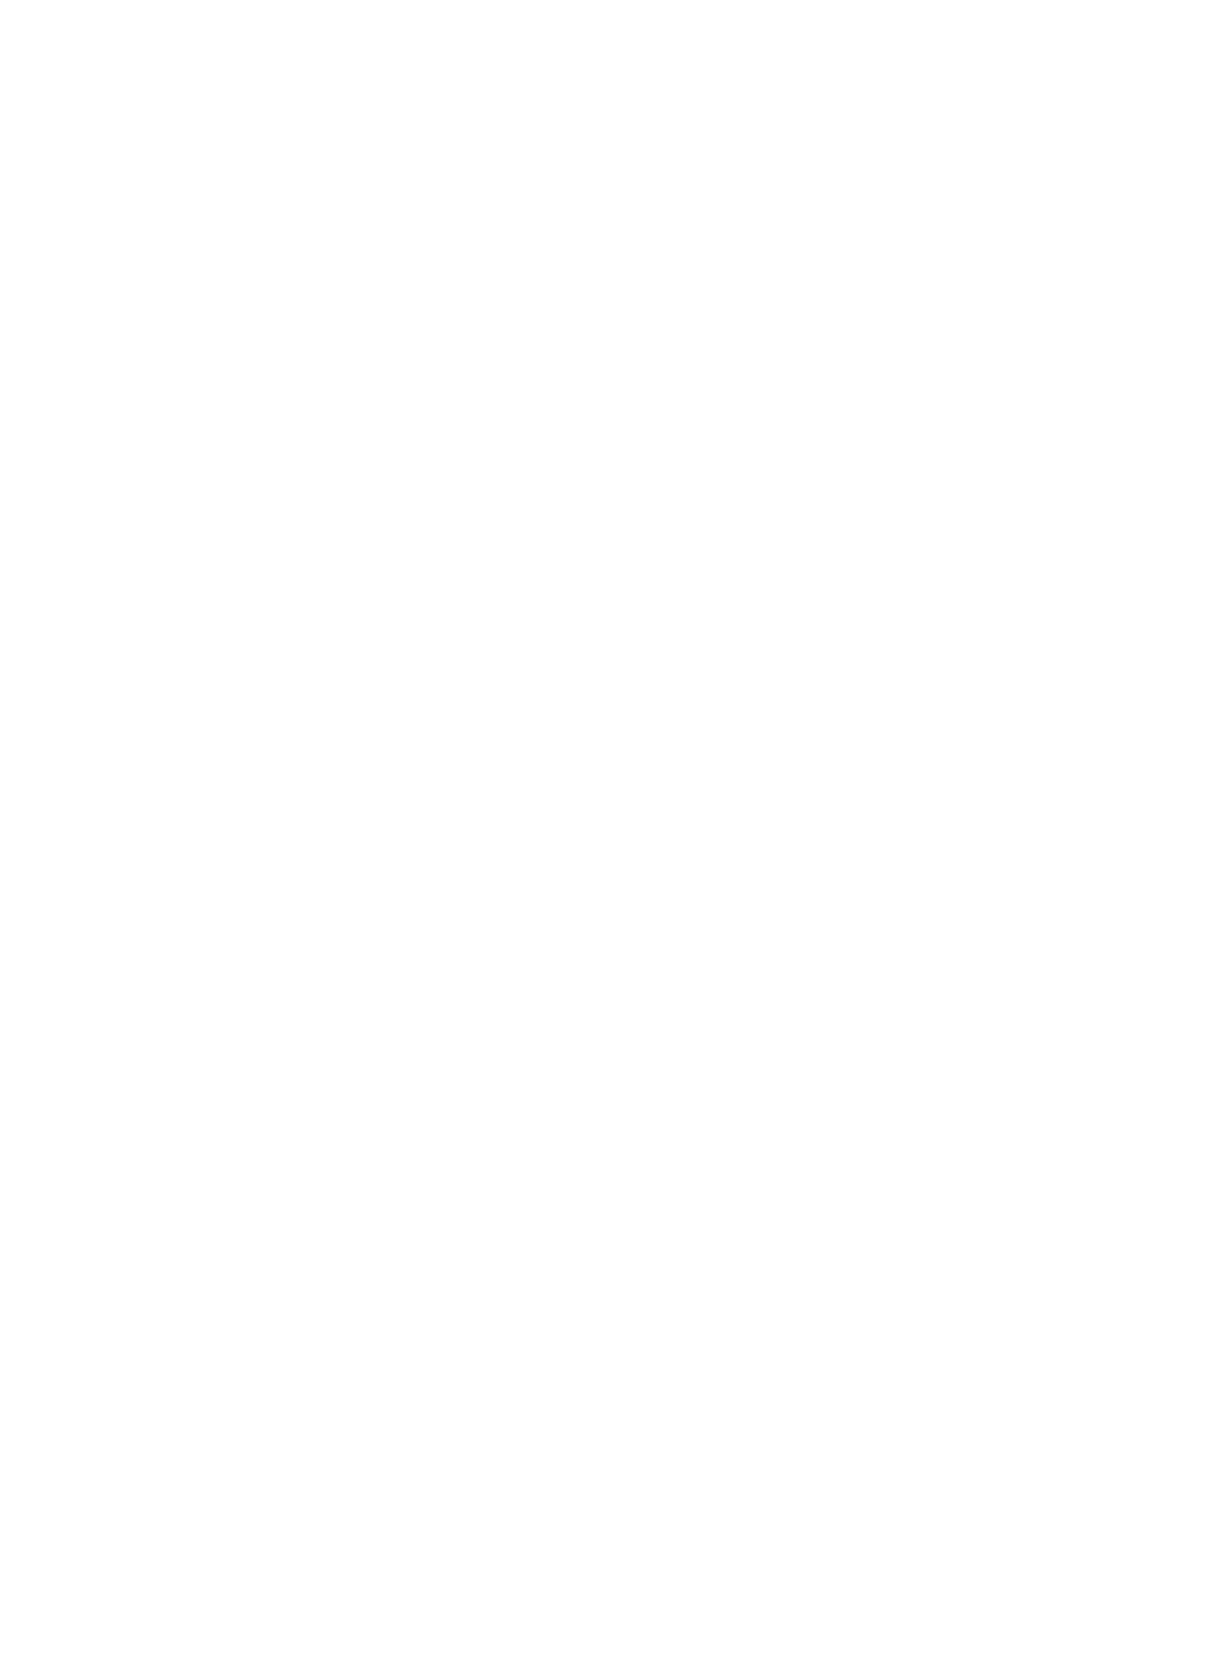 «Идеальный Фигнер». Портрет Н. Н. Фигнера, оперного артиста Мариинского театра, в партии Радамеса в опере Дж. Верди «Аида».